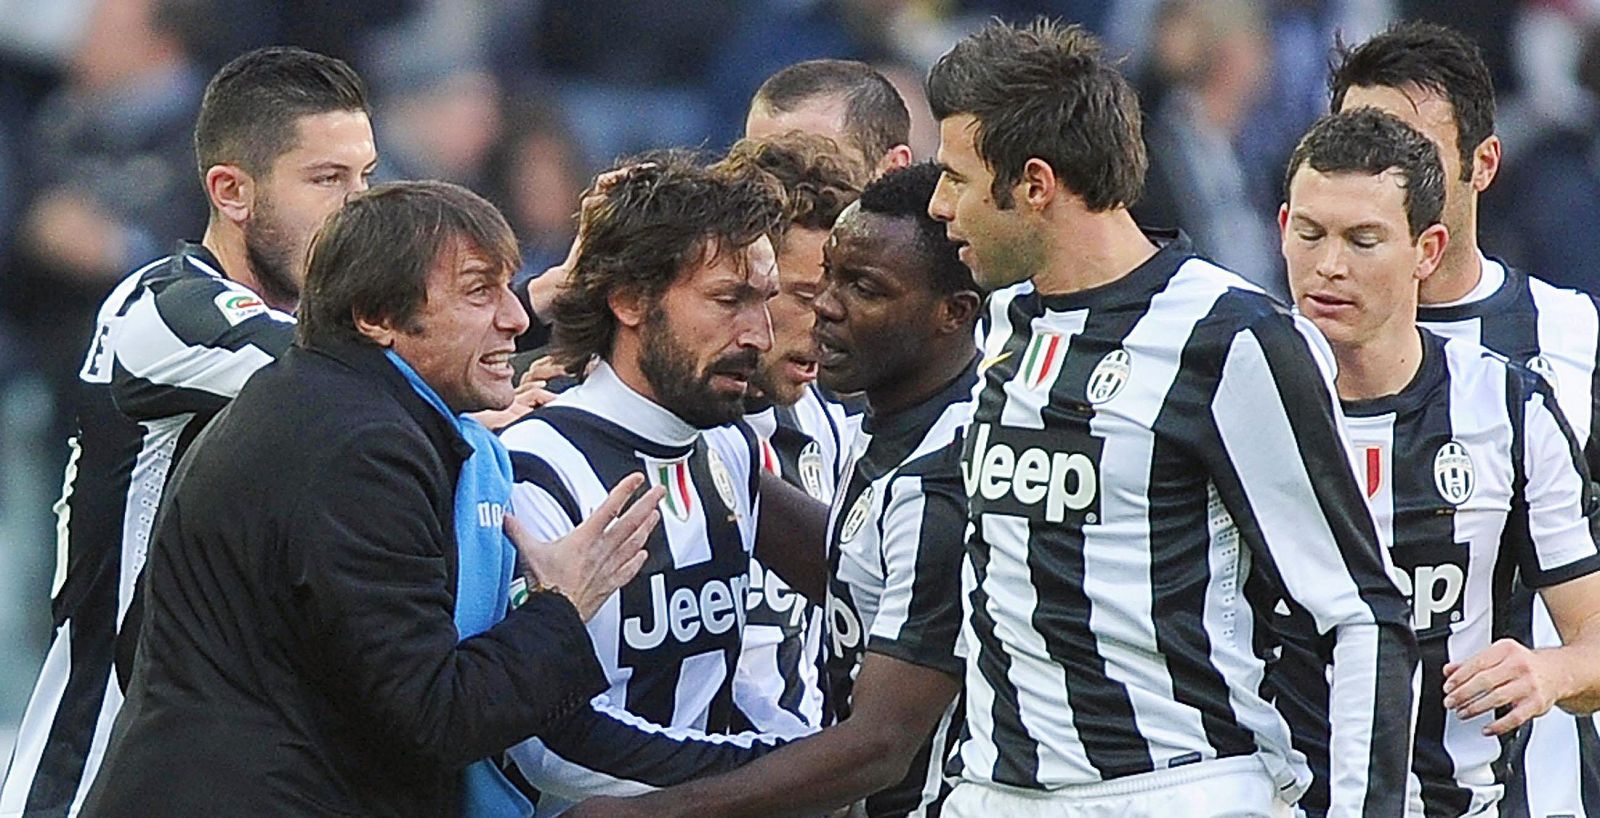 La plantilla de la Juventus y su entrenador, Antonio Conte, celebran el gol de Pirlo